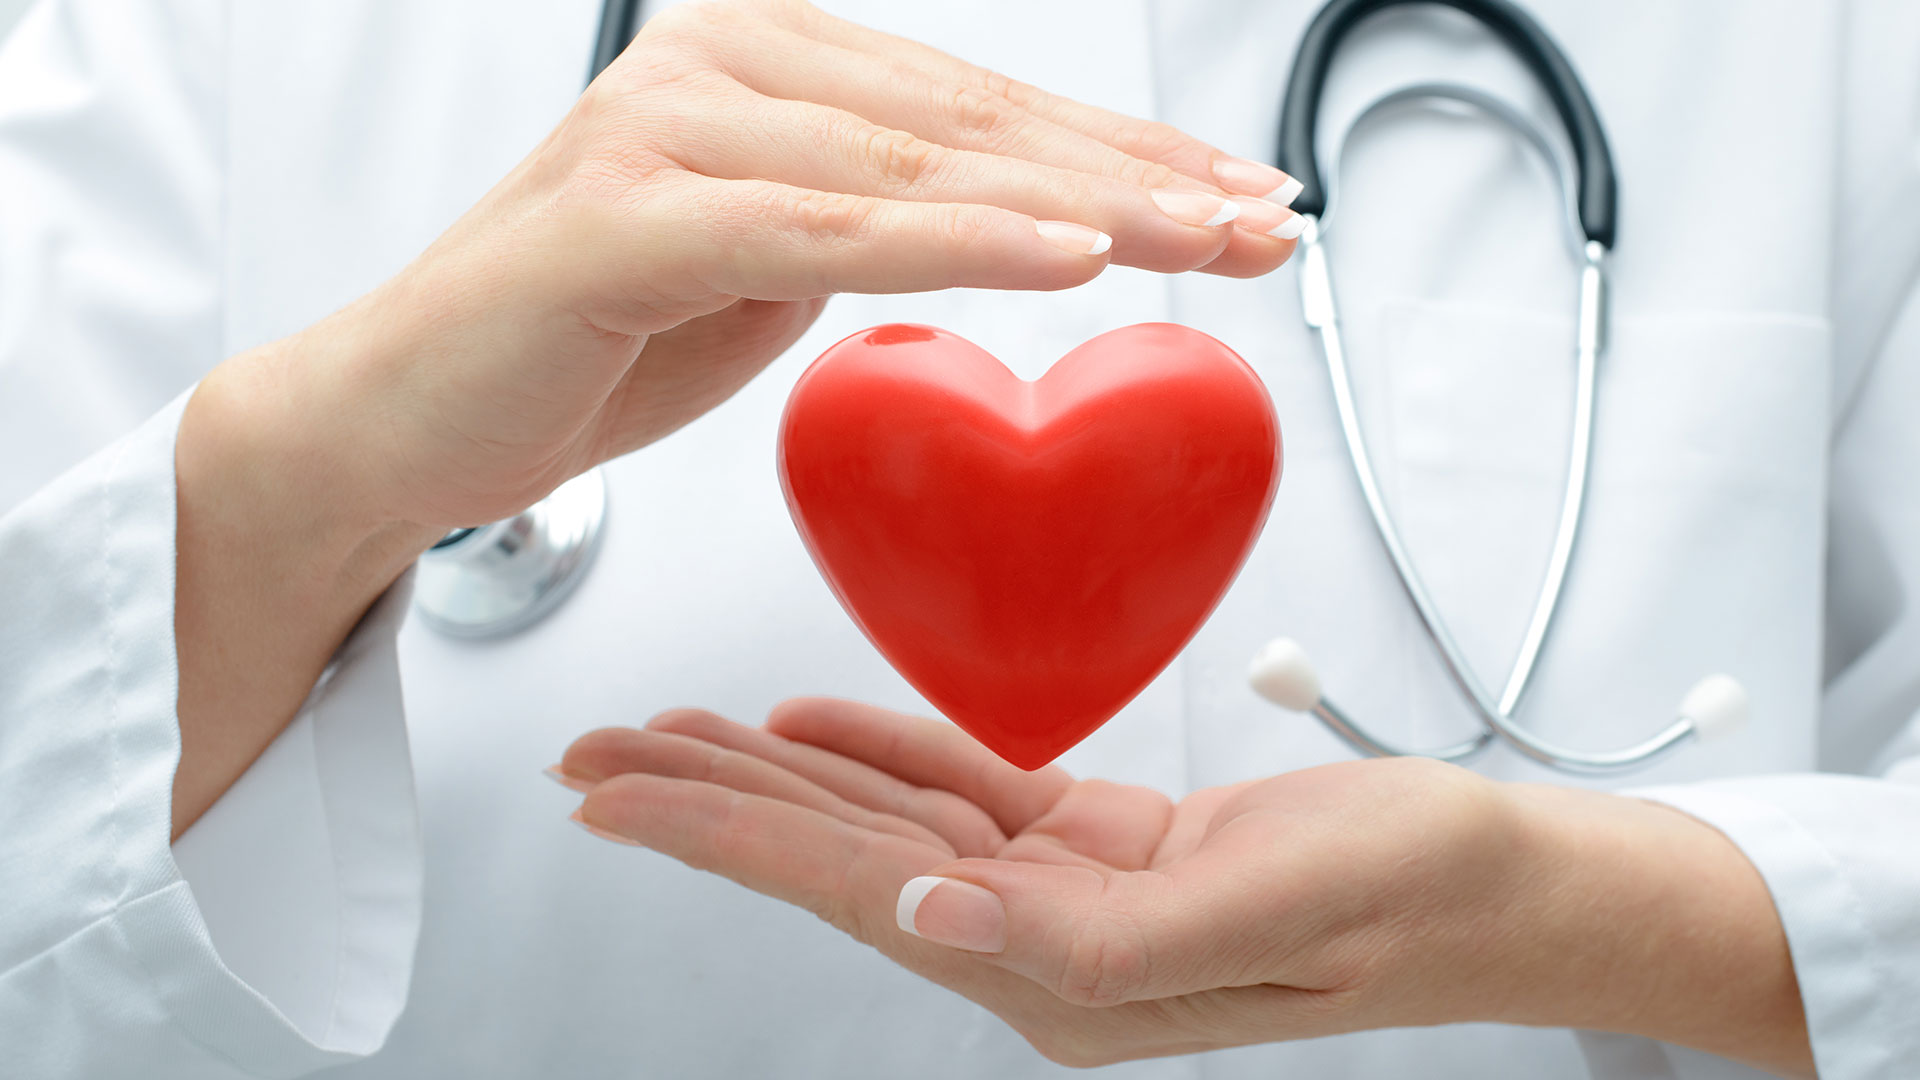 Los hombres “tienen tasas de ECV (enfermedades cardiovasculares) y mortalidad consistentemente más altas que las mujeres”, señaló el informe
(Getty)